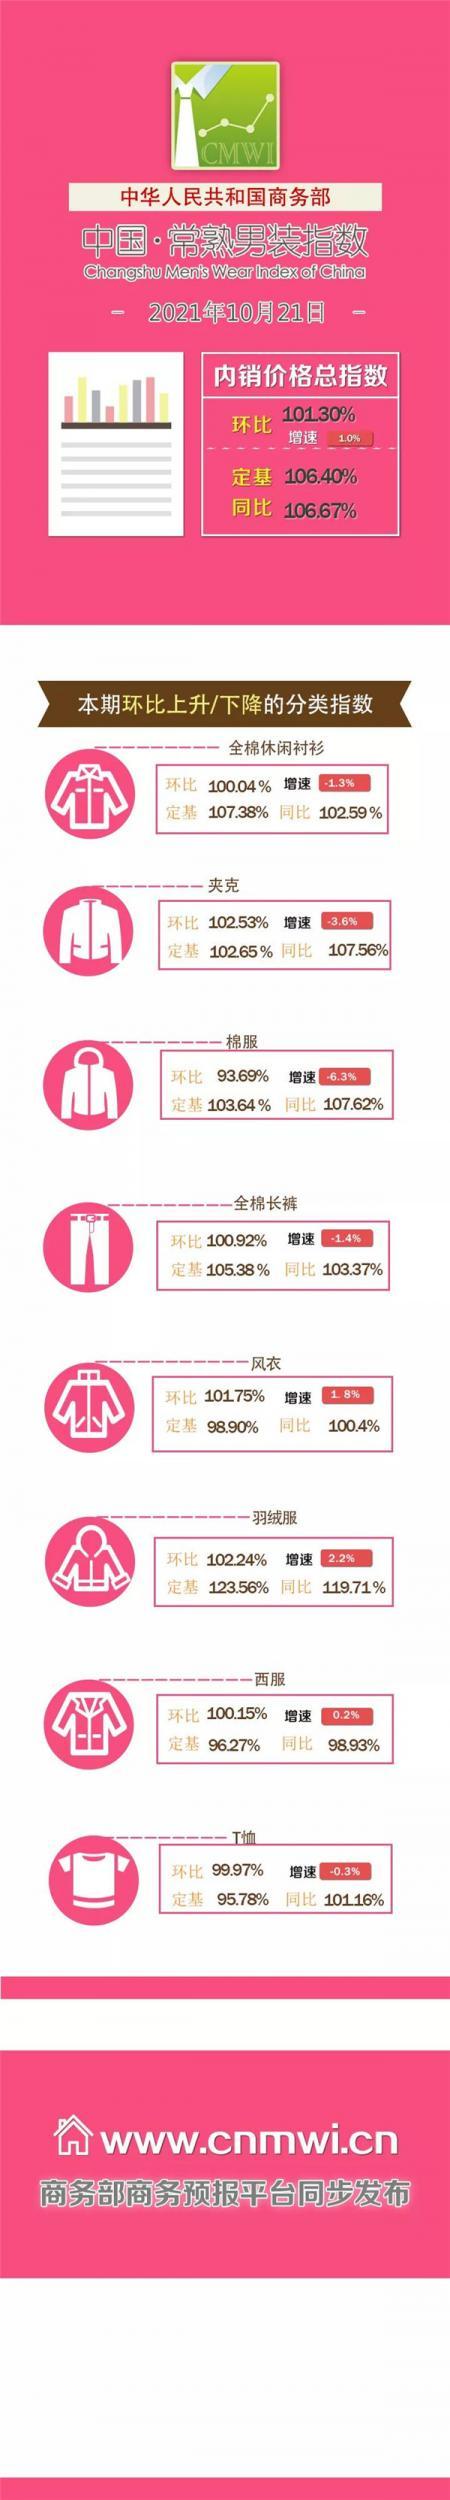 10月中旬中国·常熟男装内销价格指数发布